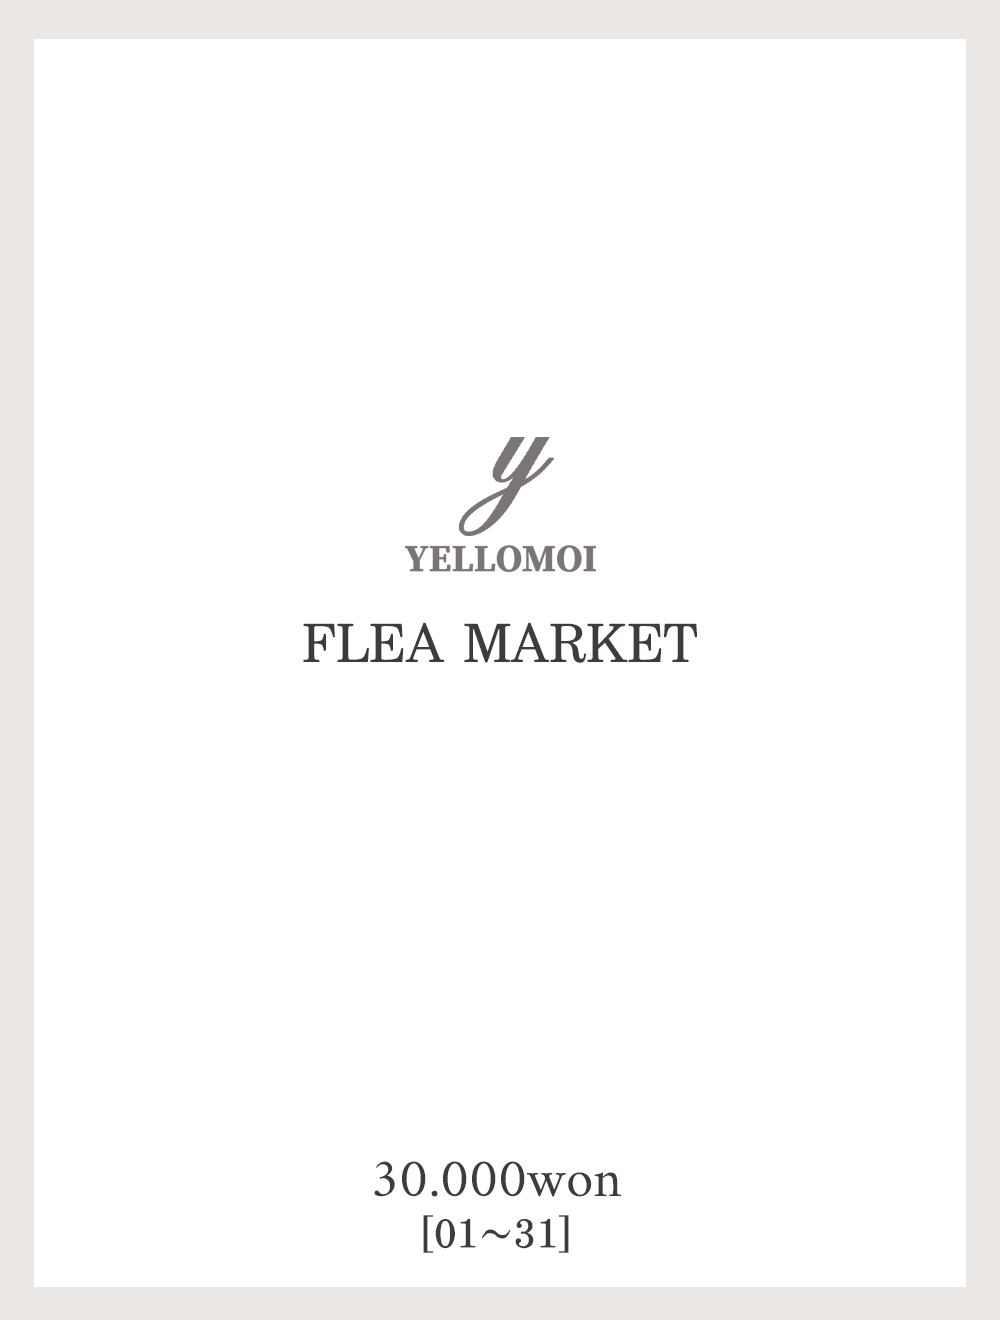 [YELLOMOI]Flea market, 3만원(01-31)